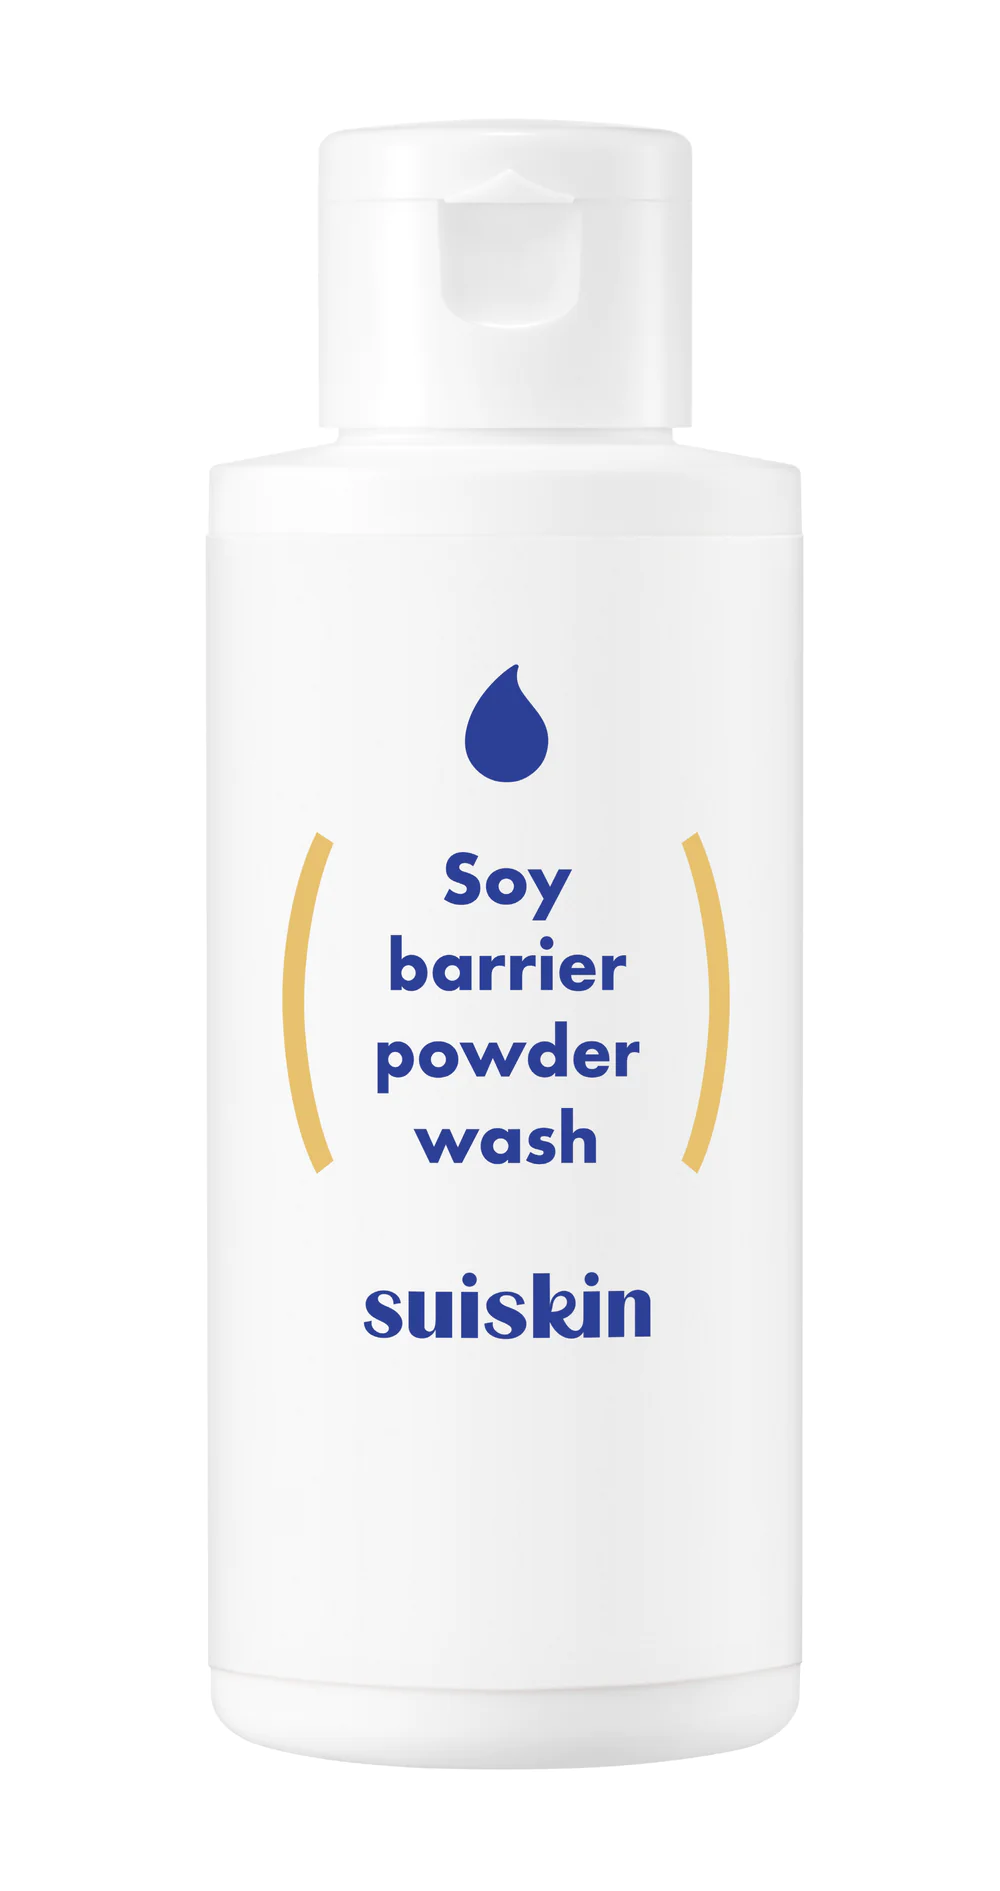 [SUISKIN] Soy barrier powder wash - 50g - Enrapturecosmetics